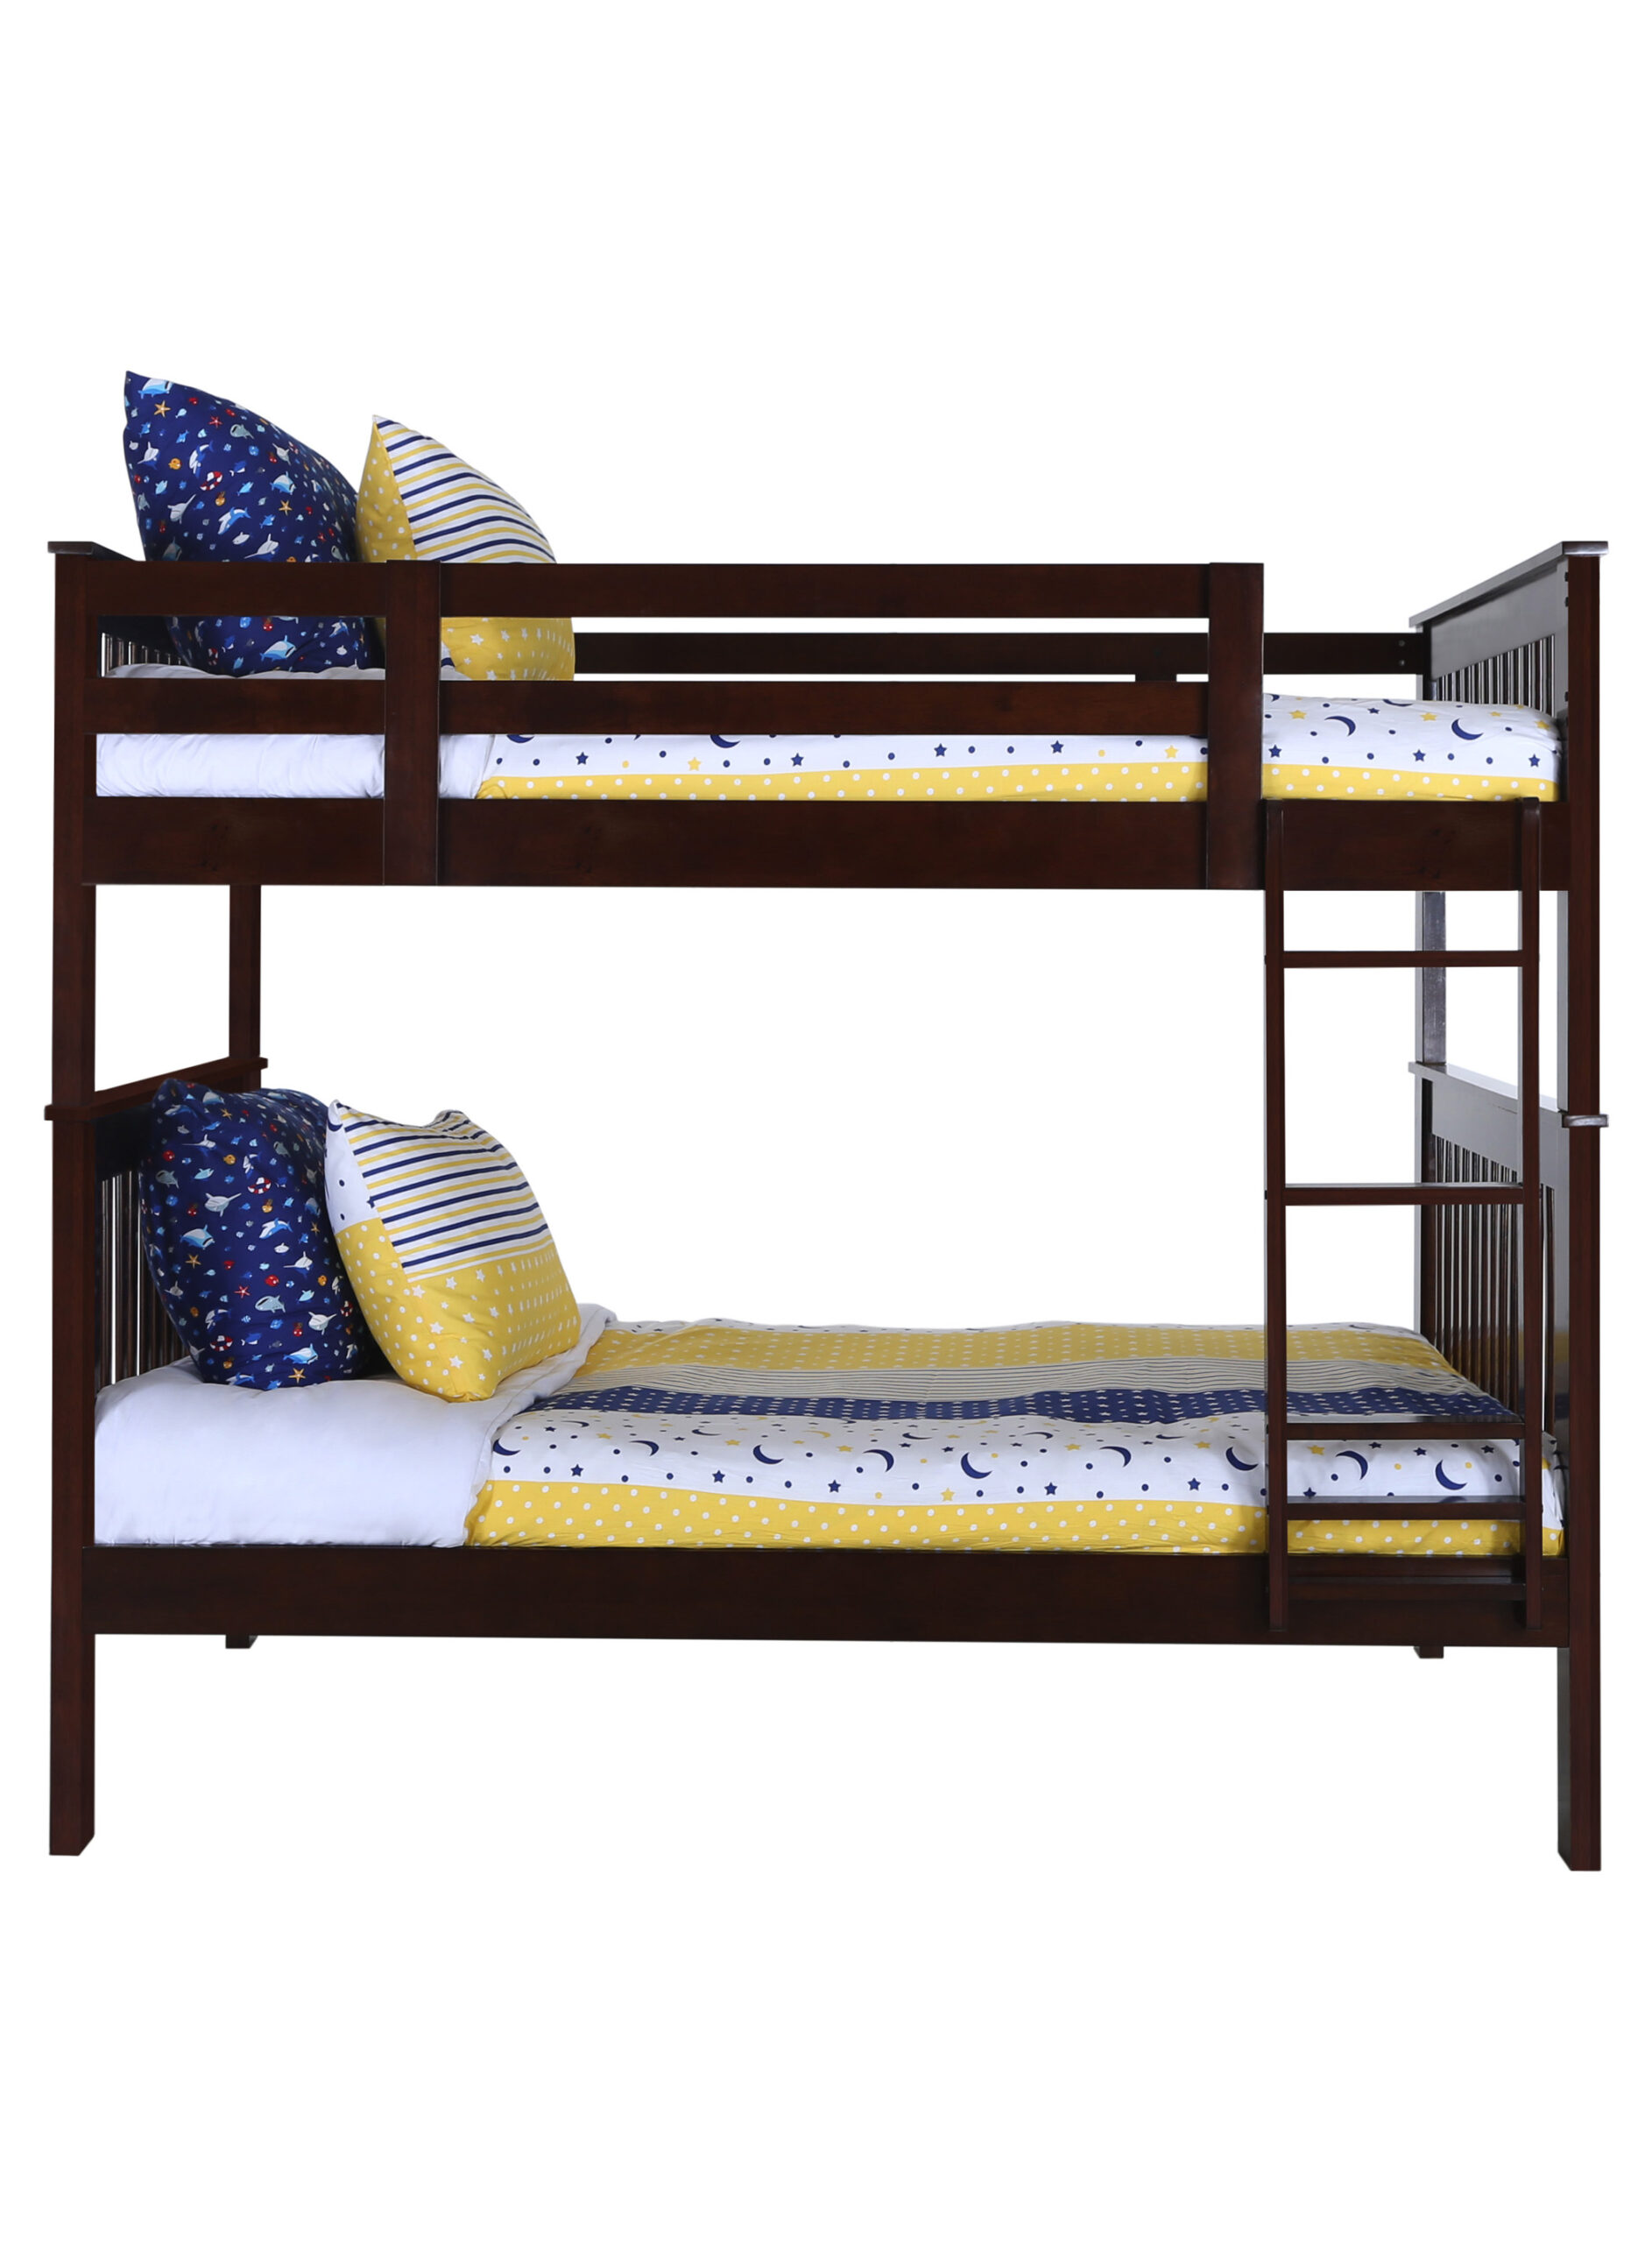 Details about   Konrad Furniture Barcelona Solid Hardwood Bunk Bed Full Over Full White 